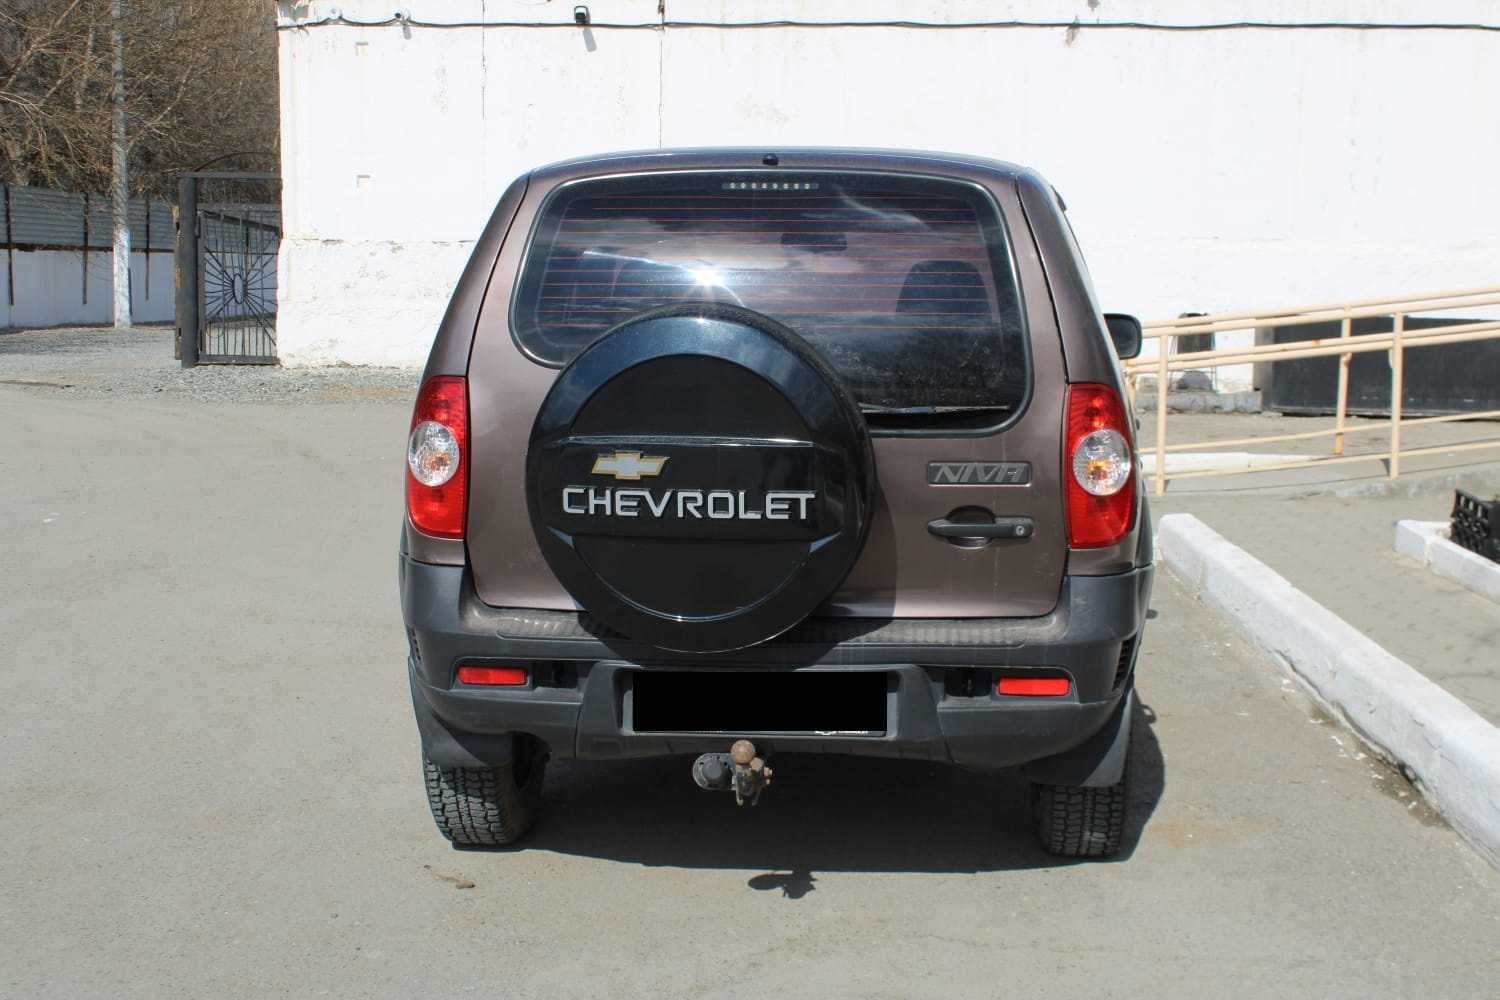 Chevrolet Niva 2012 г.в. в одних руках, казашка